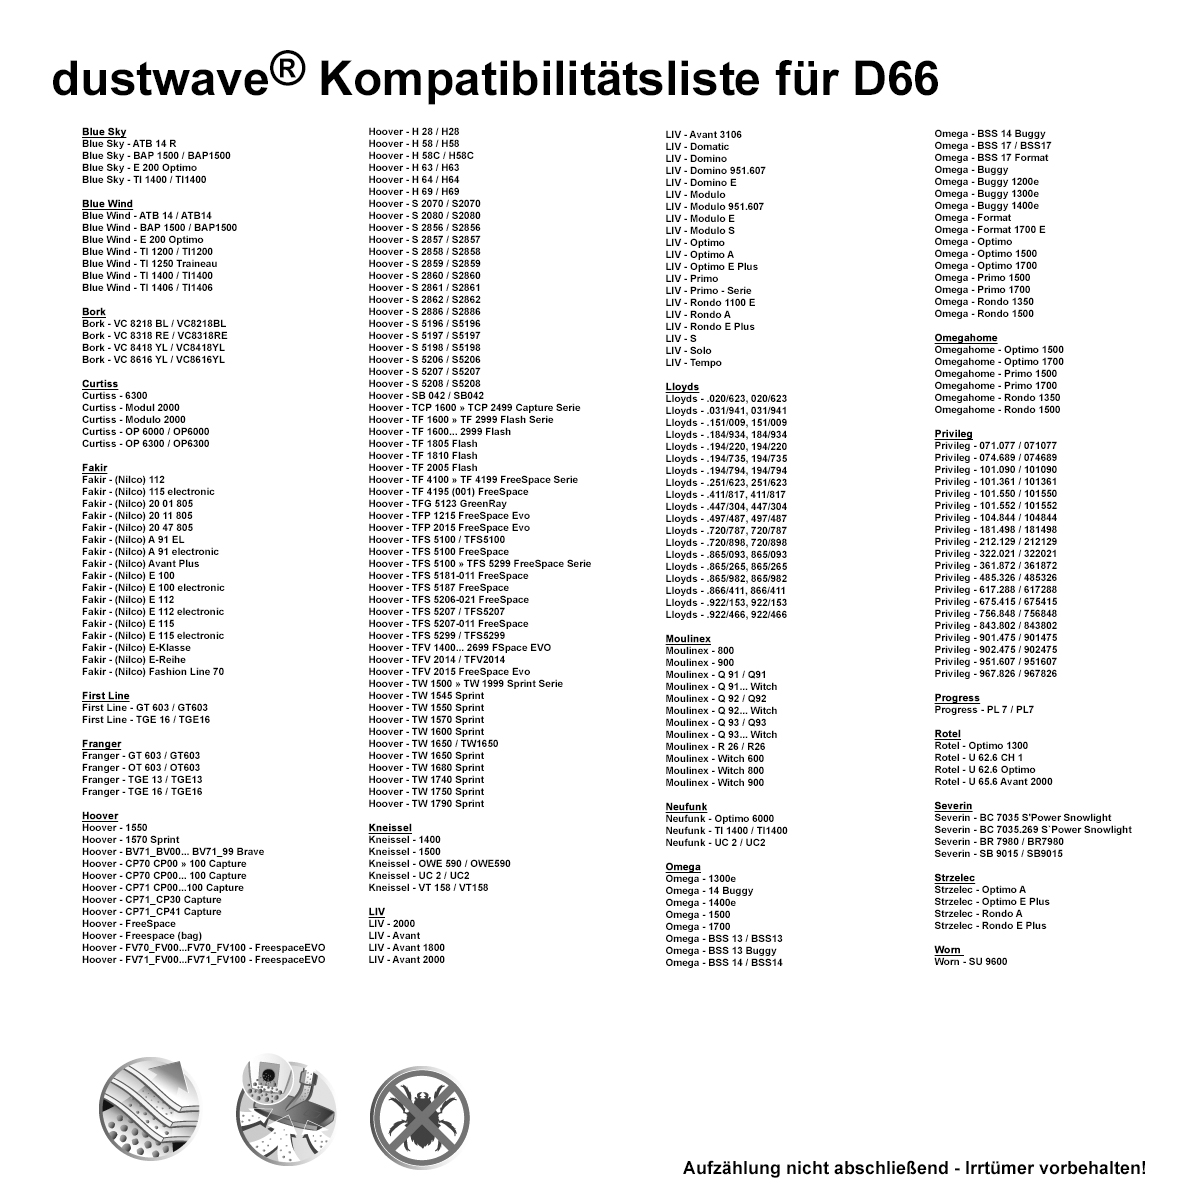 Dustwave® 10 Staubsaugerbeutel für Hoover TFS 5209... FreeSpace - hocheffizient, mehrlagiges Mikrovlies mit Hygieneverschluss - Made in Germany